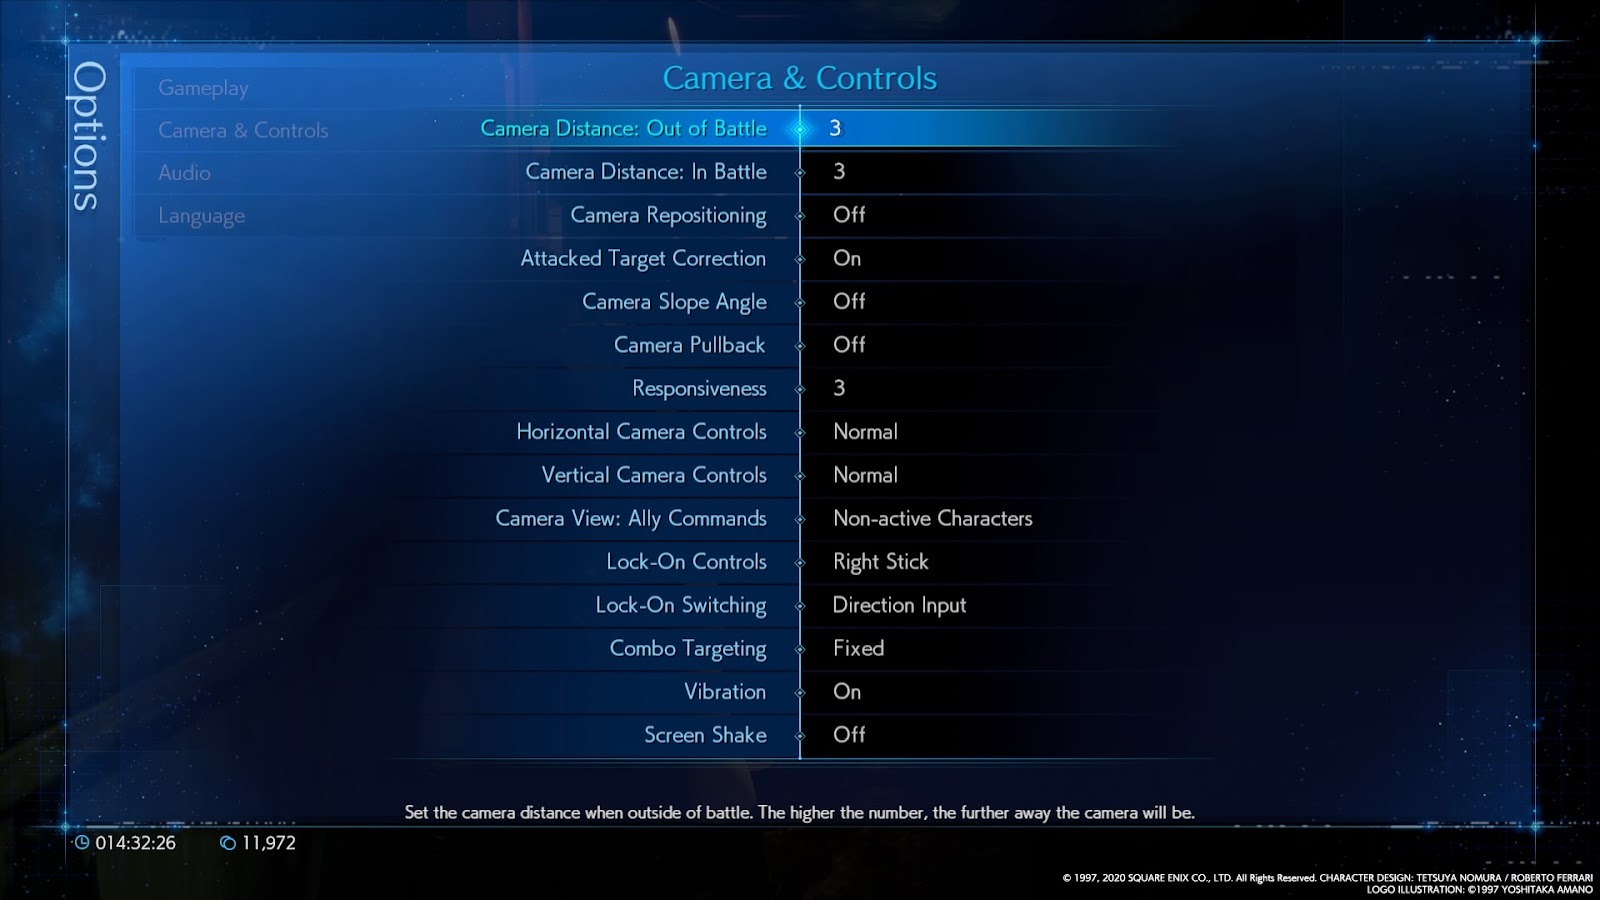 Camera and controls options menu.